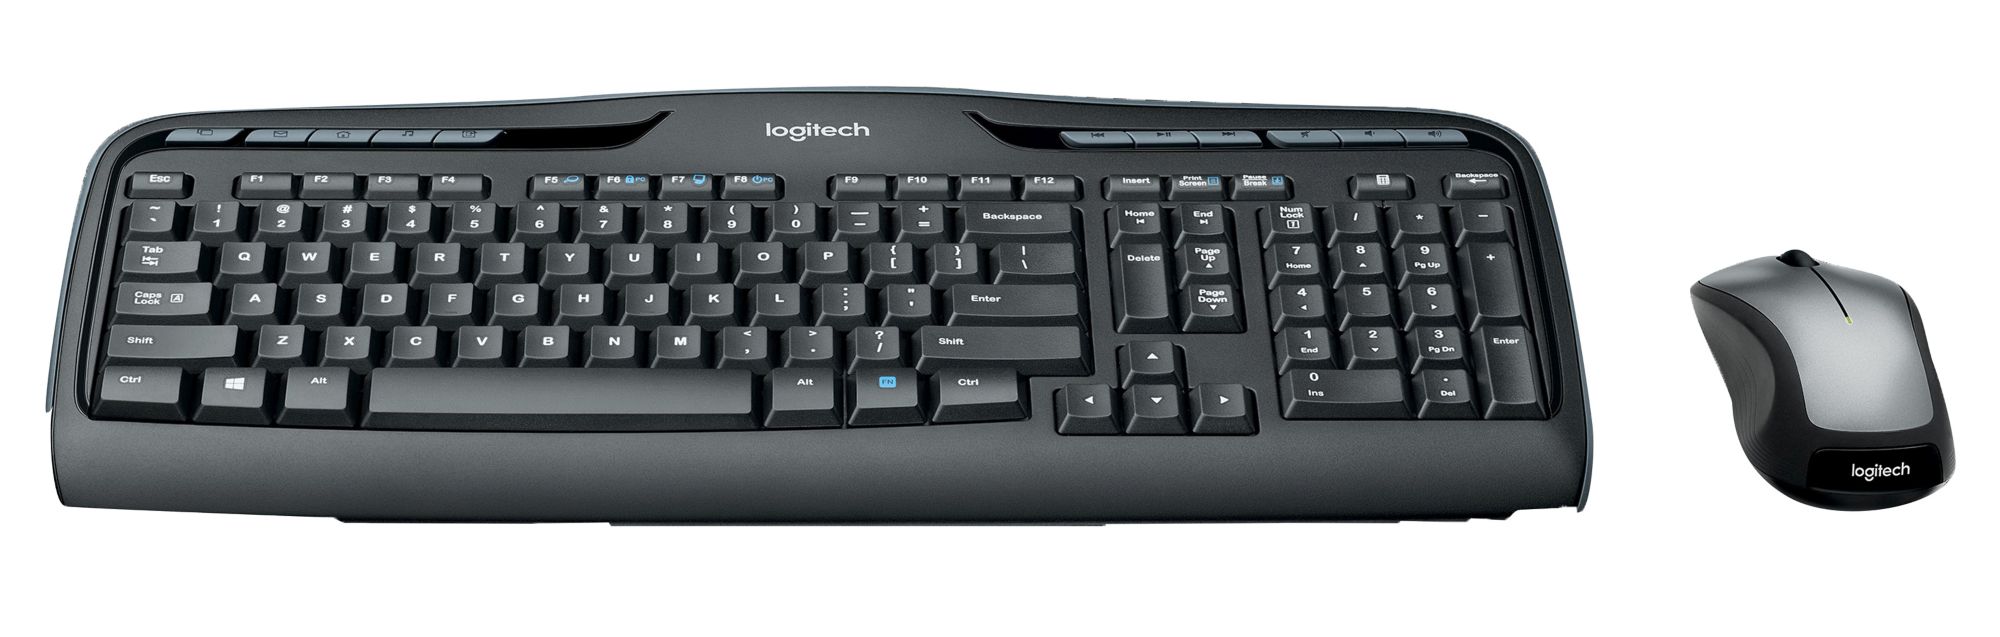 Logitech MK335 Wireless Keyboard Mouse - BJs Wholesale Club